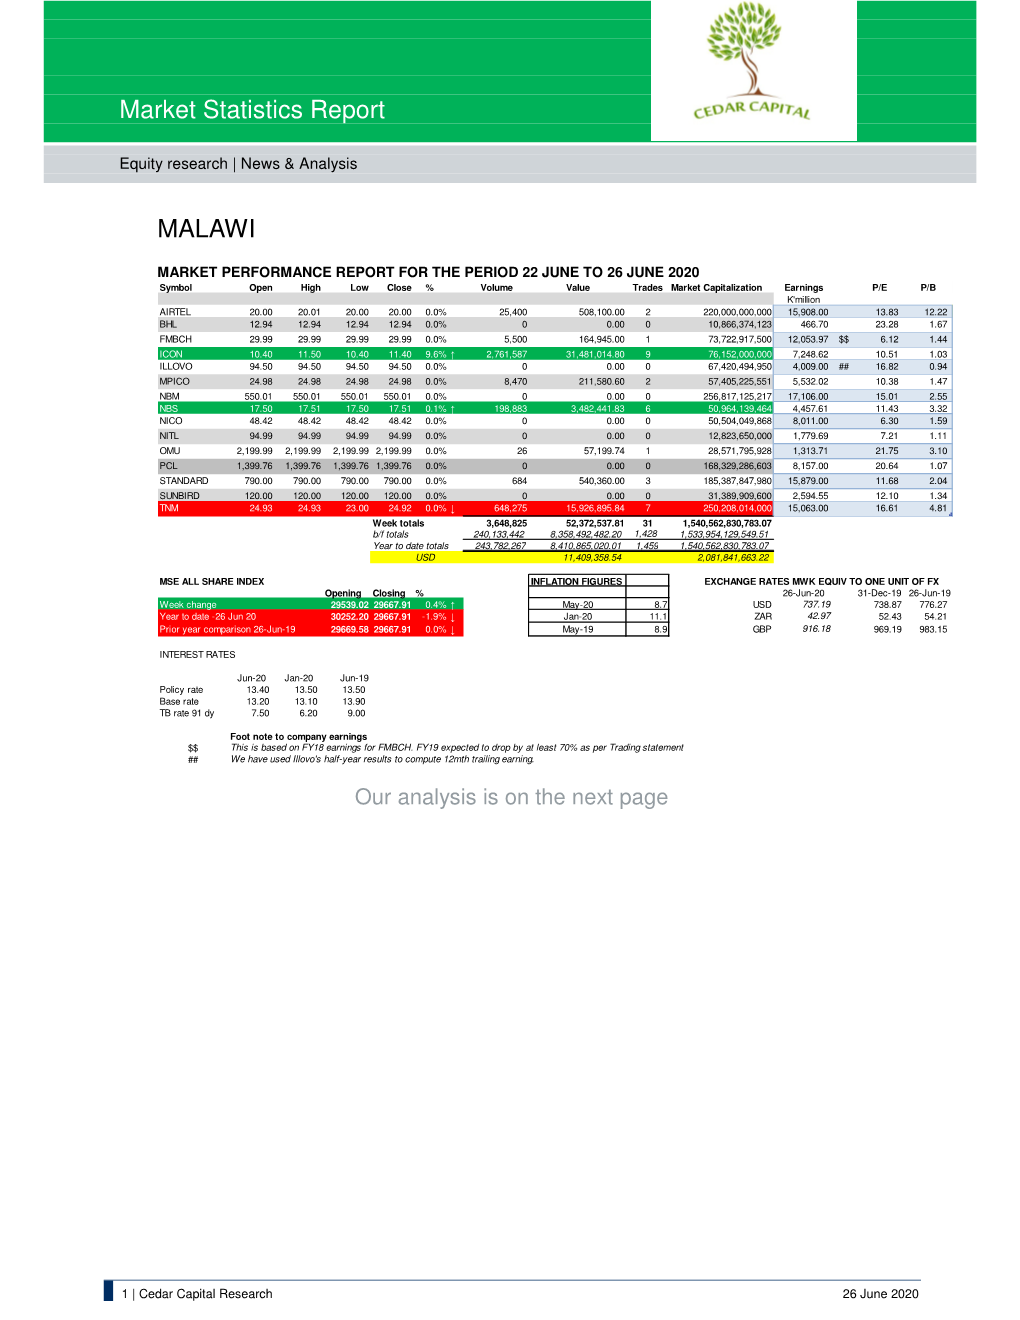 Market Statistics Report MALAWI